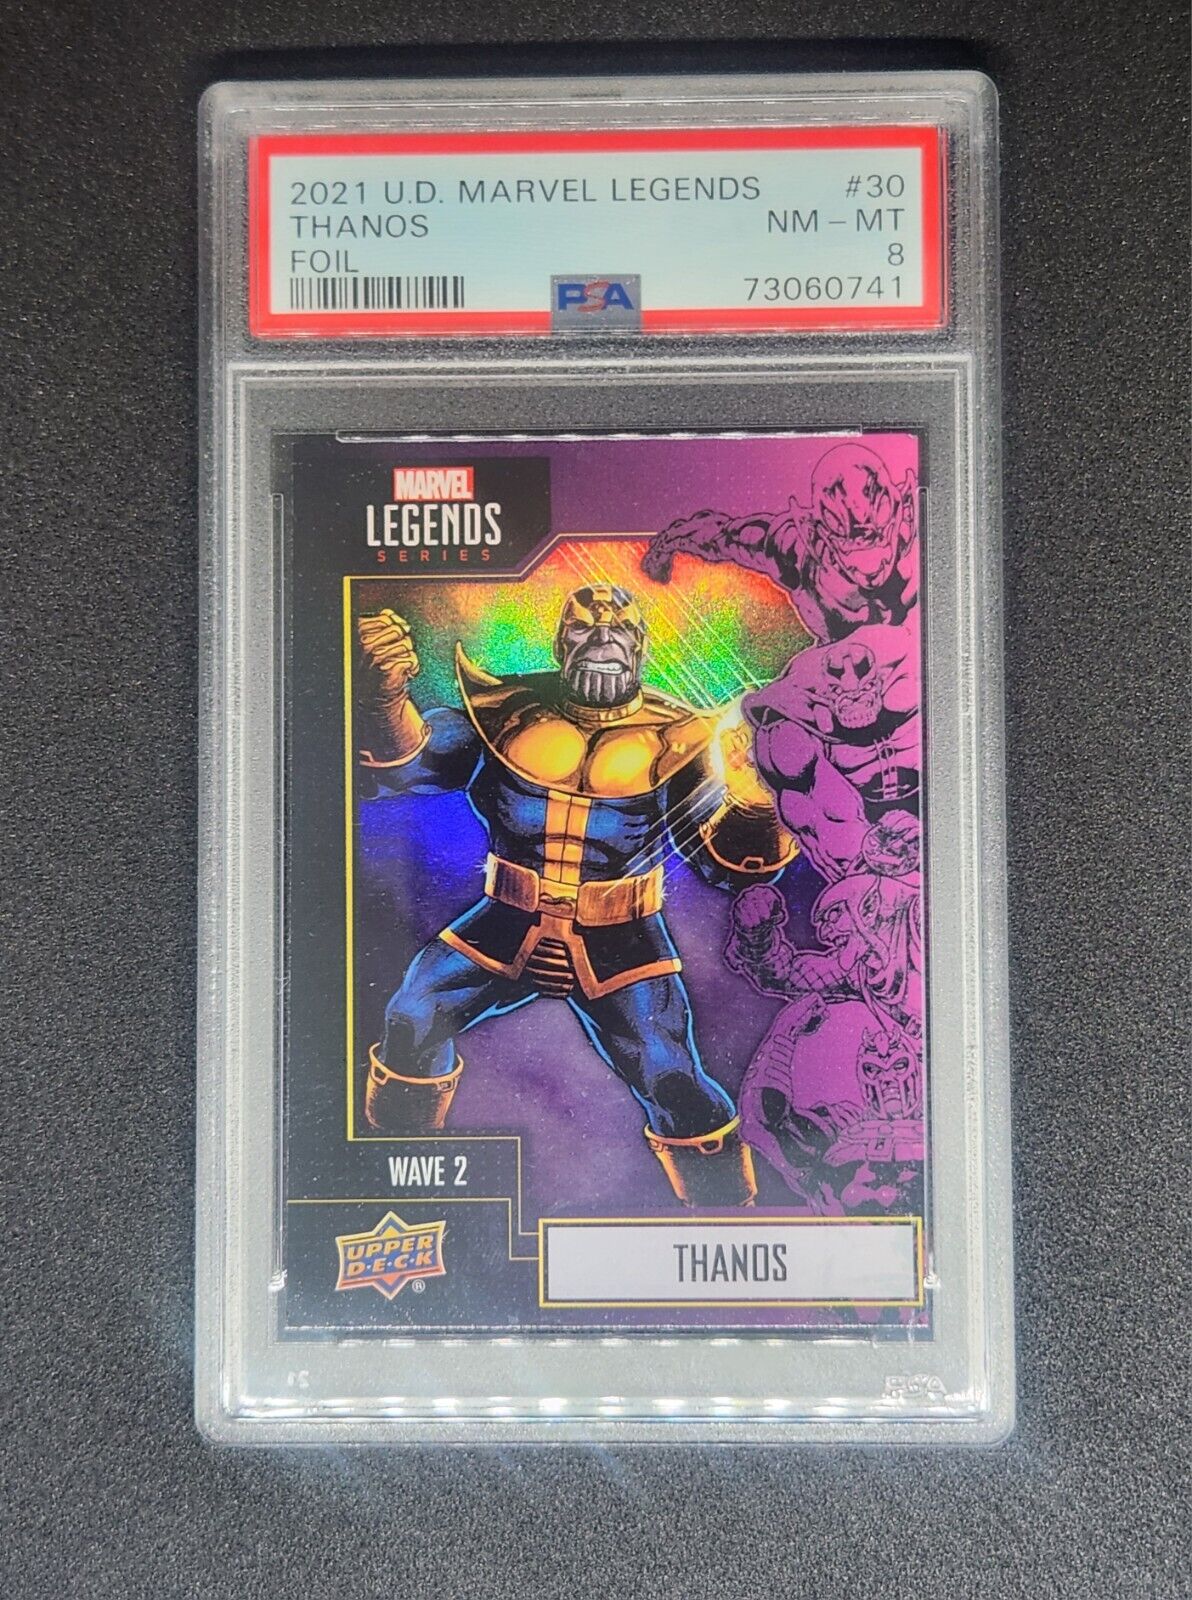 Thanos 2021 Upper Deck Marvel Legends Wave 2 Foil Card #30 SSP Rare Refractor